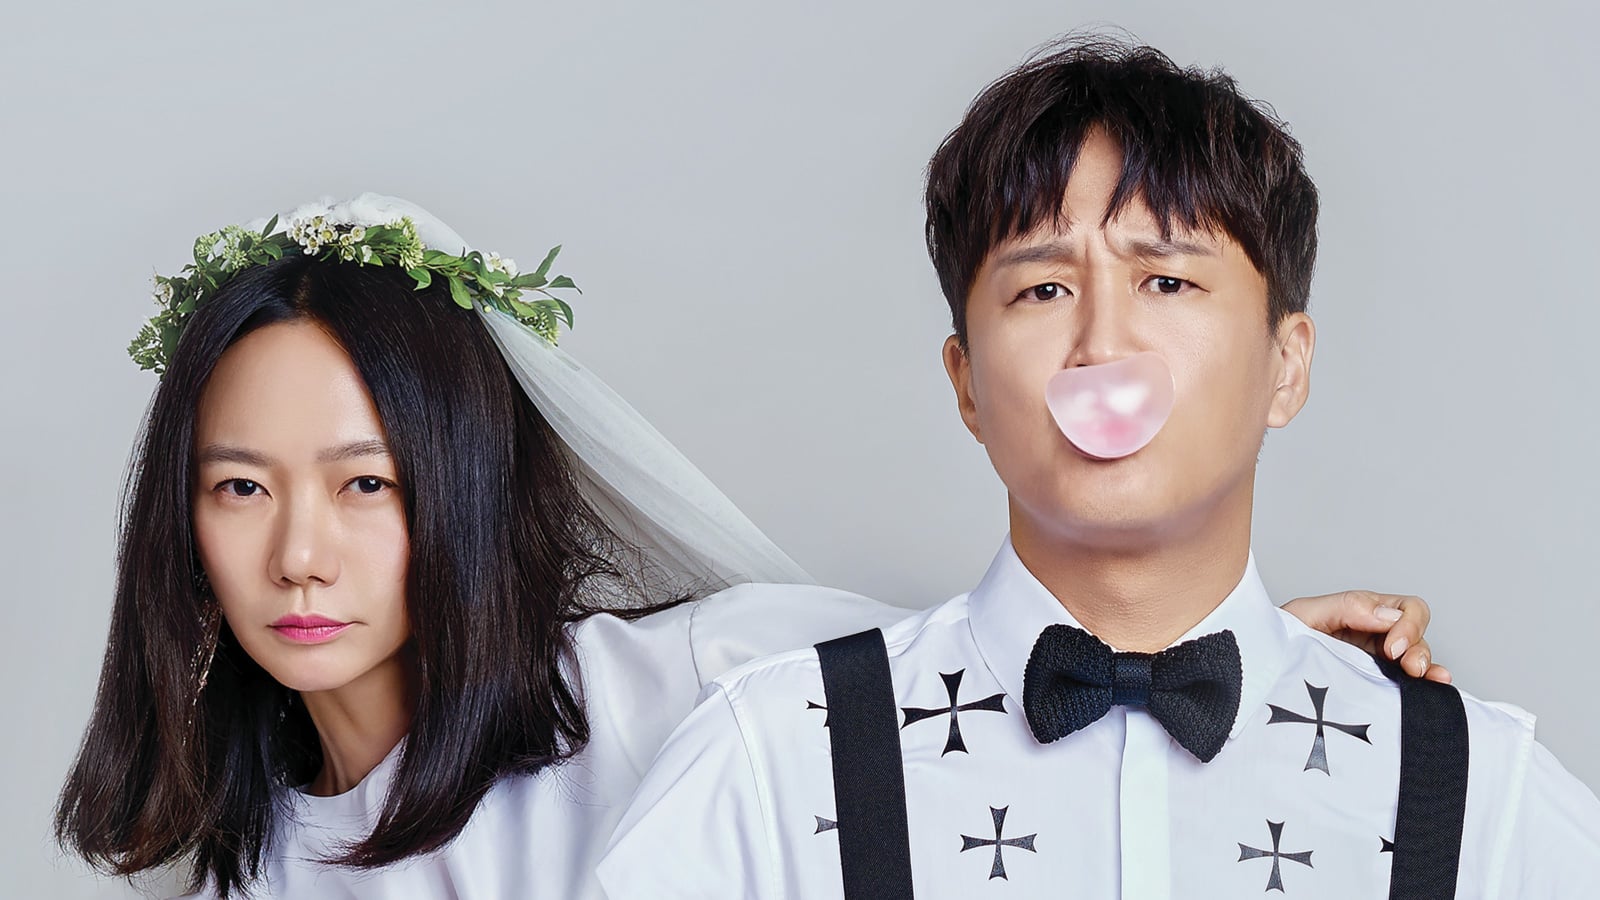 Nonton Drama Korea Matrimonial Chaos Subtitle Indonesia